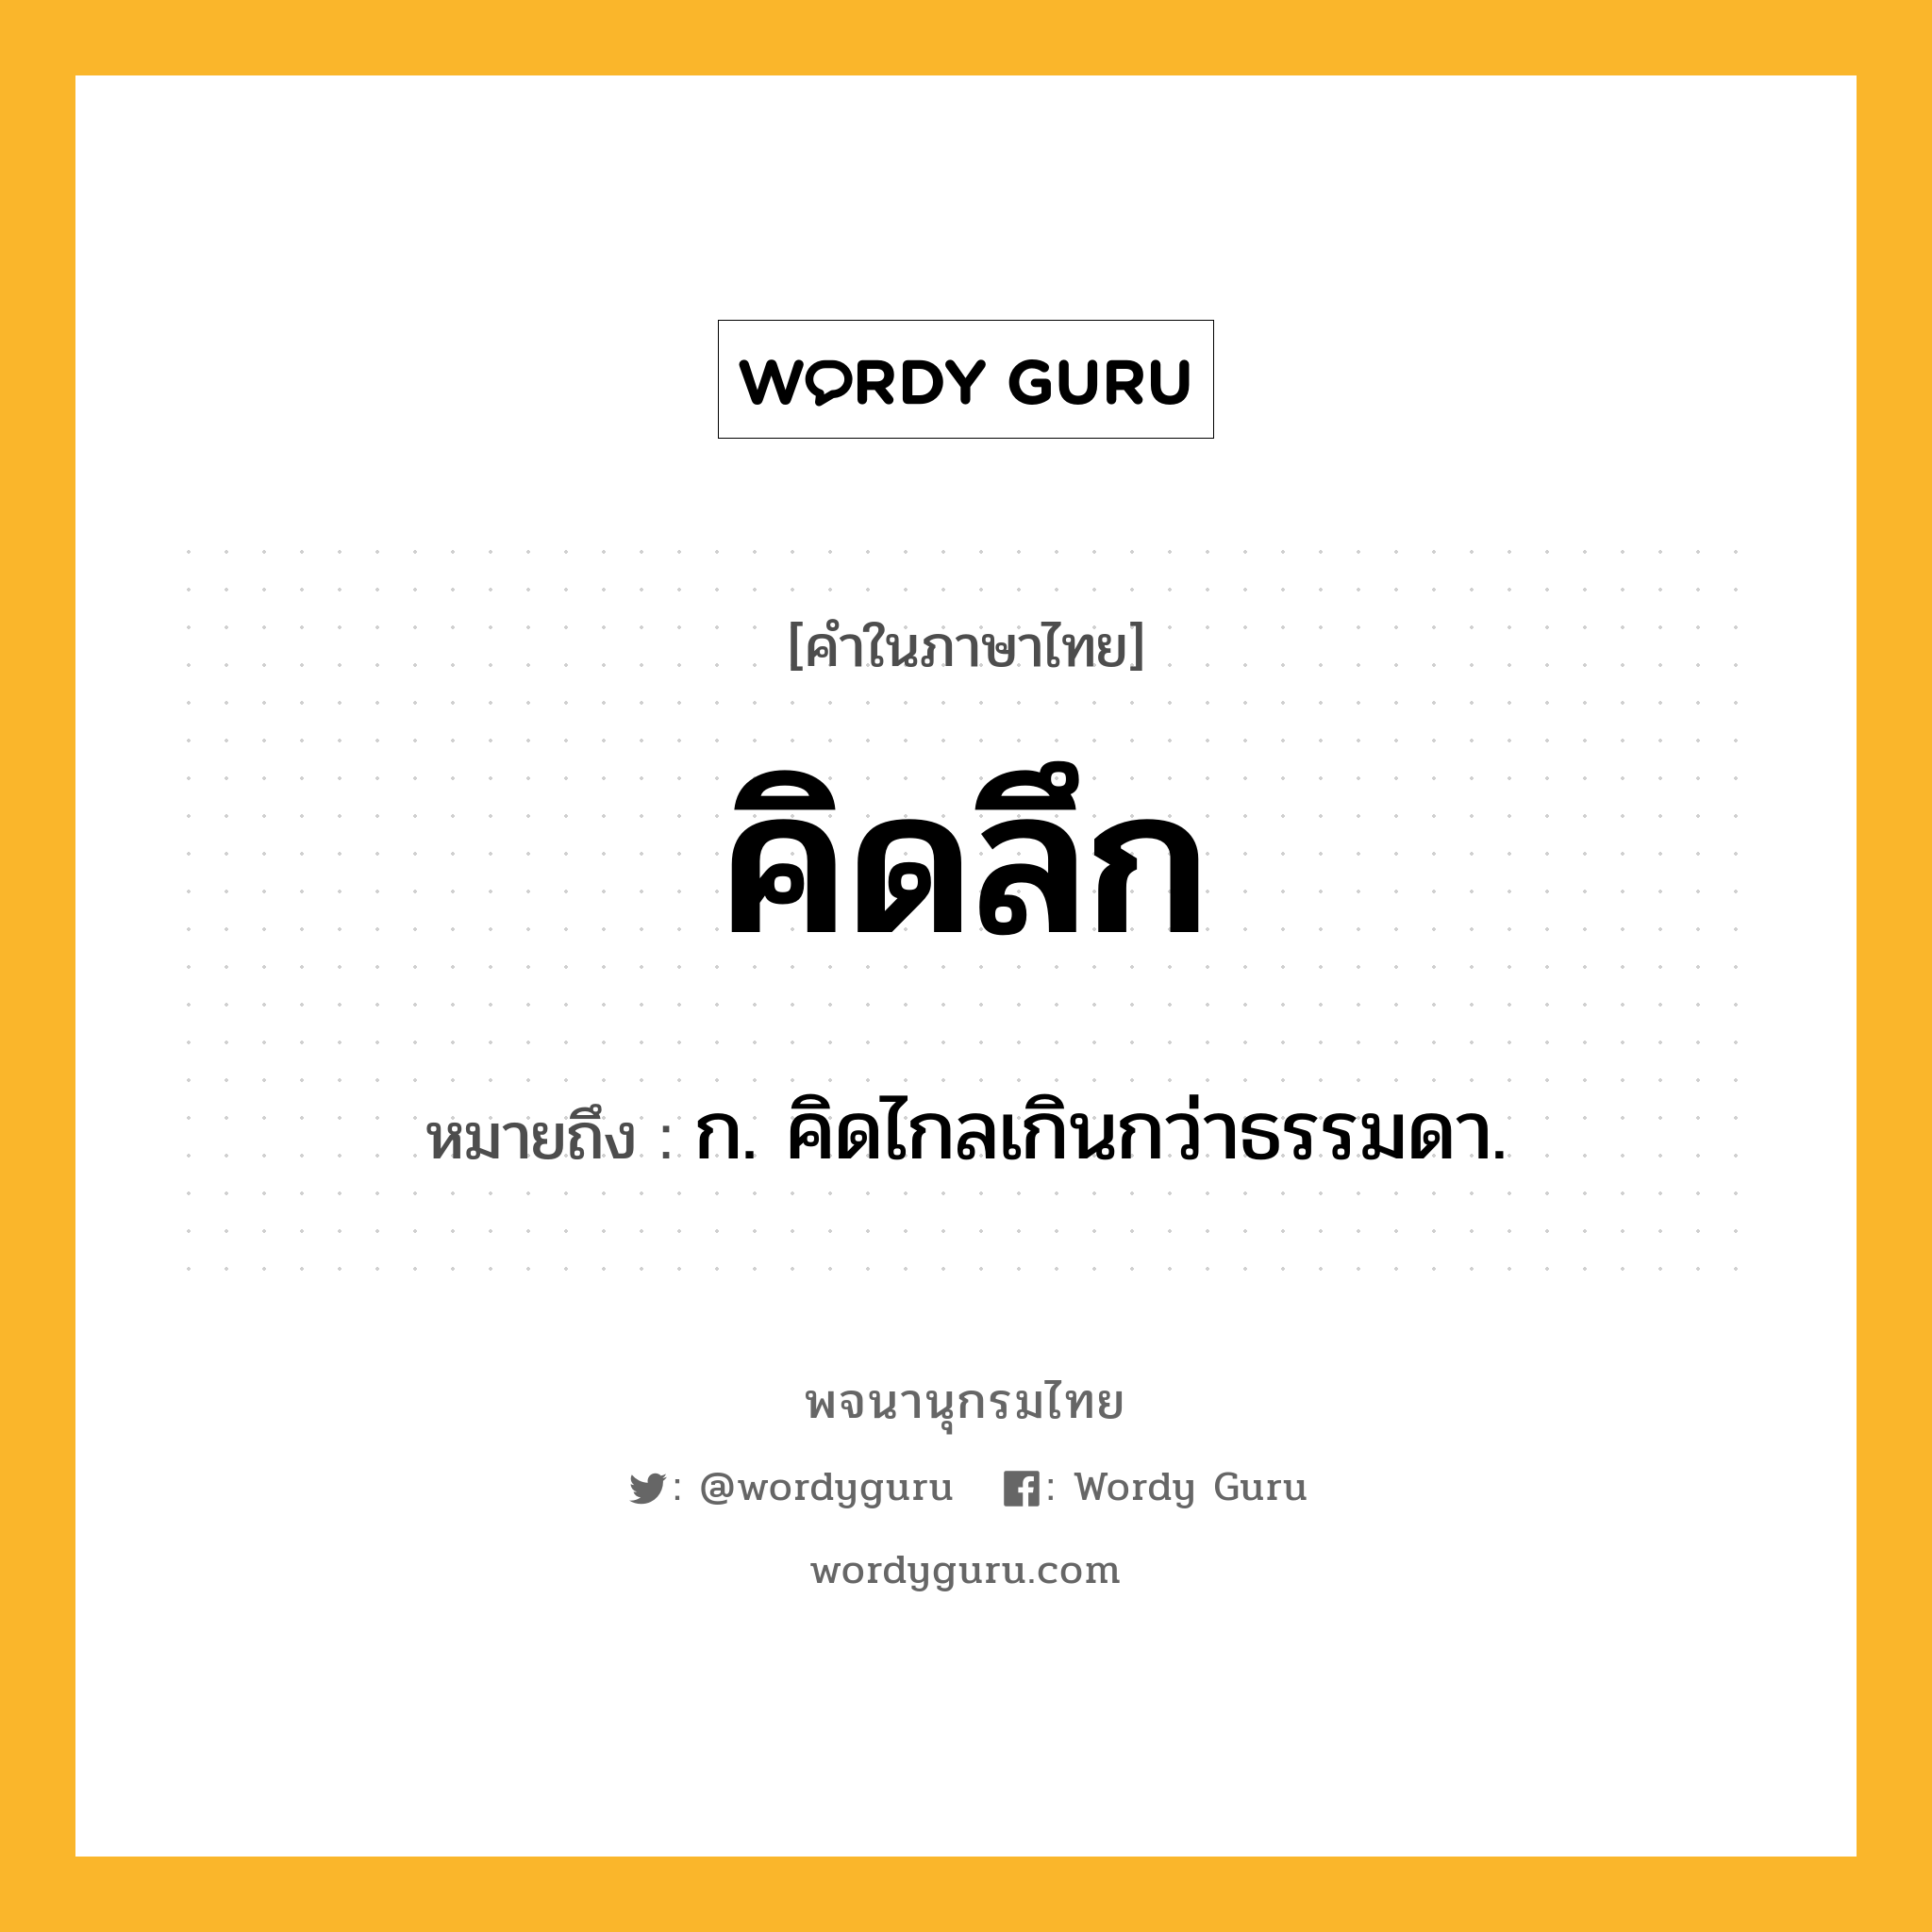 คิดลึก หมายถึงอะไร?, คำในภาษาไทย คิดลึก หมายถึง ก. คิดไกลเกินกว่าธรรมดา.